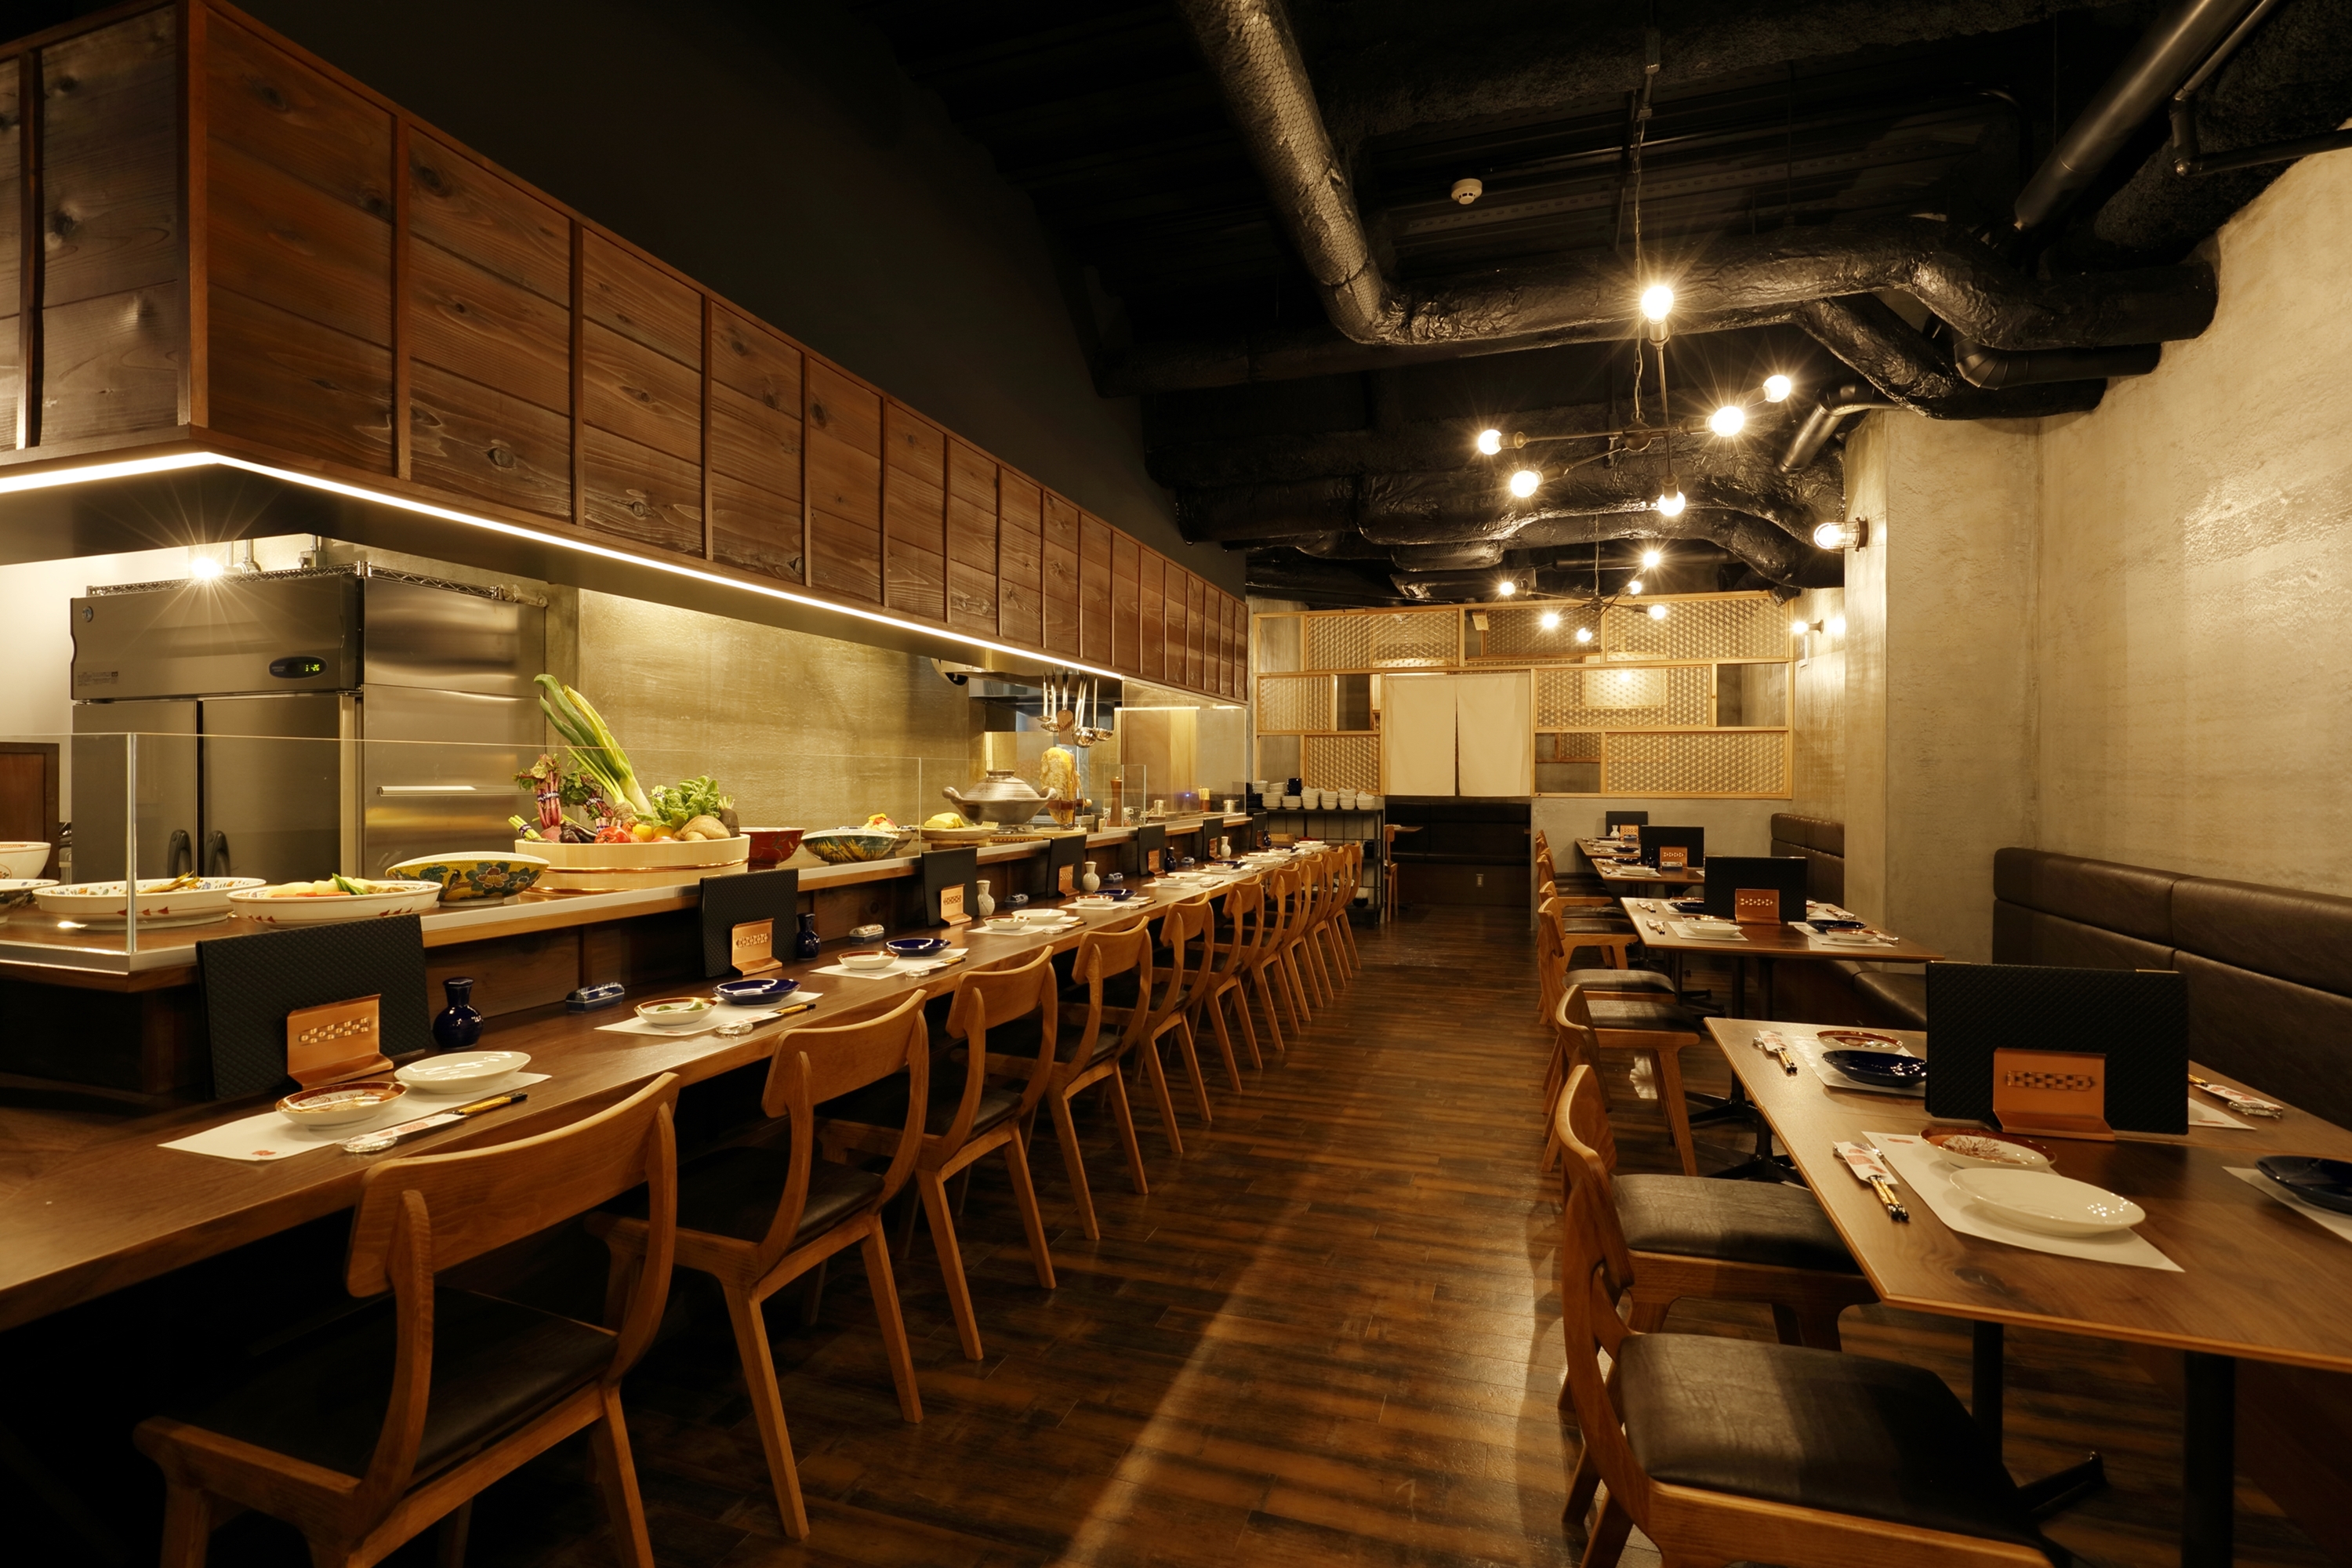 Banzai Japanese Bar & Kitchen